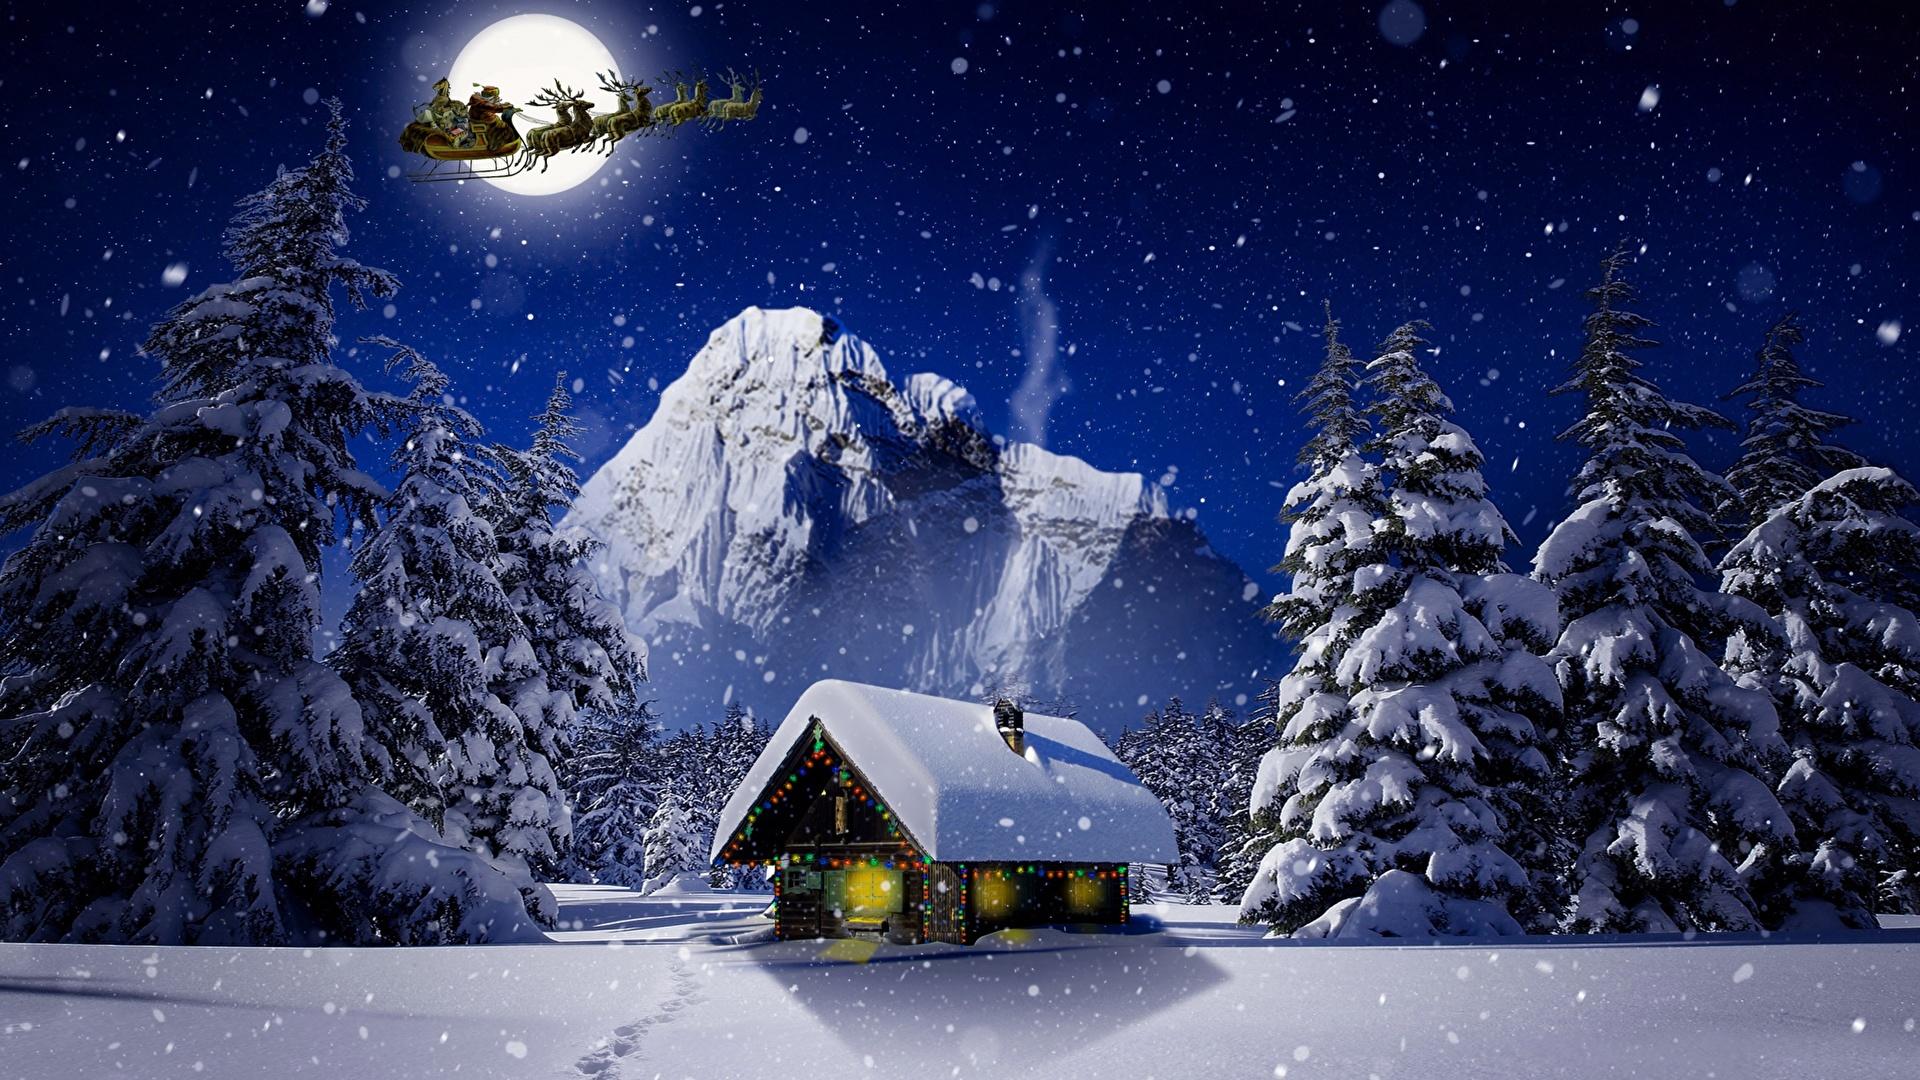 Скачать 1920x1080 зима, снег, покров, ночь, свет, деревья, хвойные, звезды,  синий, белый обои, картинки full hd, hdtv, fhd, 1080p